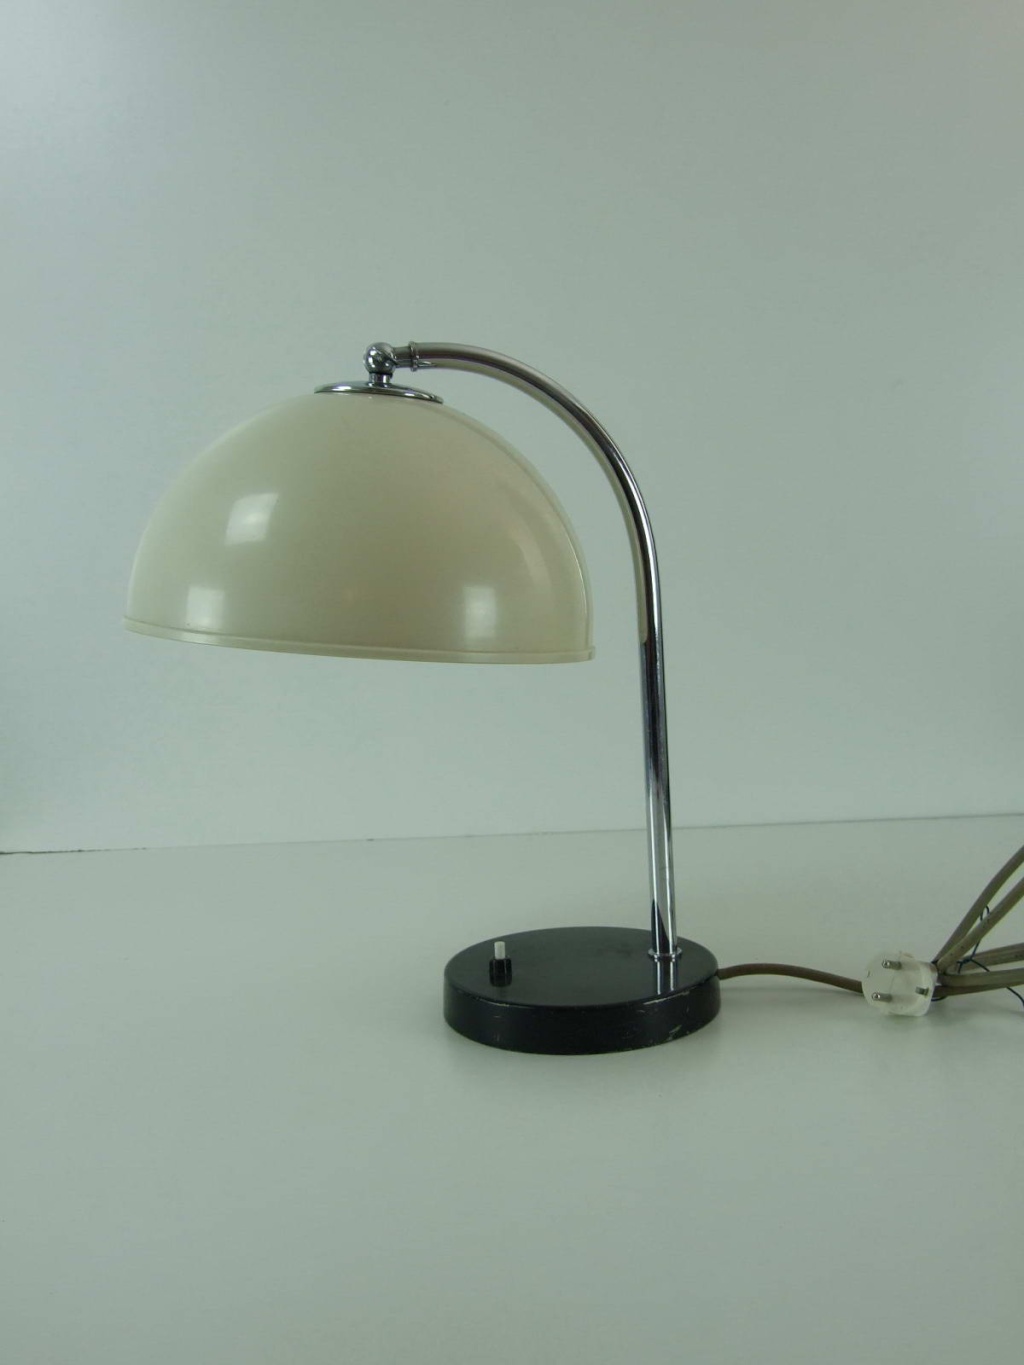 What brand/designer has produced this art deco lamp? Kaiser Idell Dscf1711